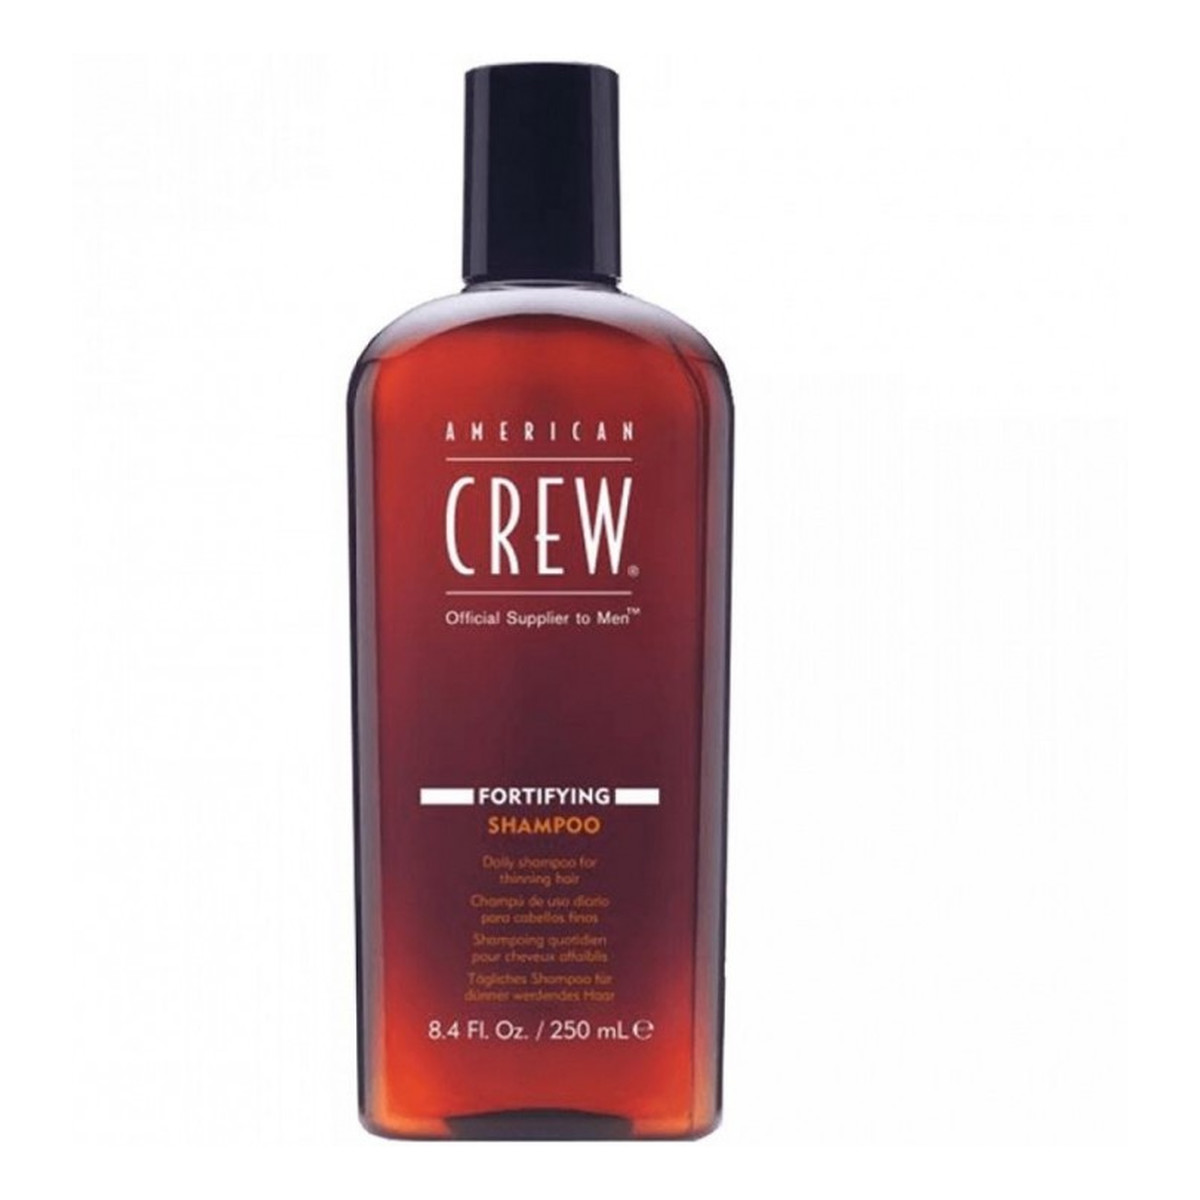 American Crew Fortifying szampon wzmacniający do włosów 250ml